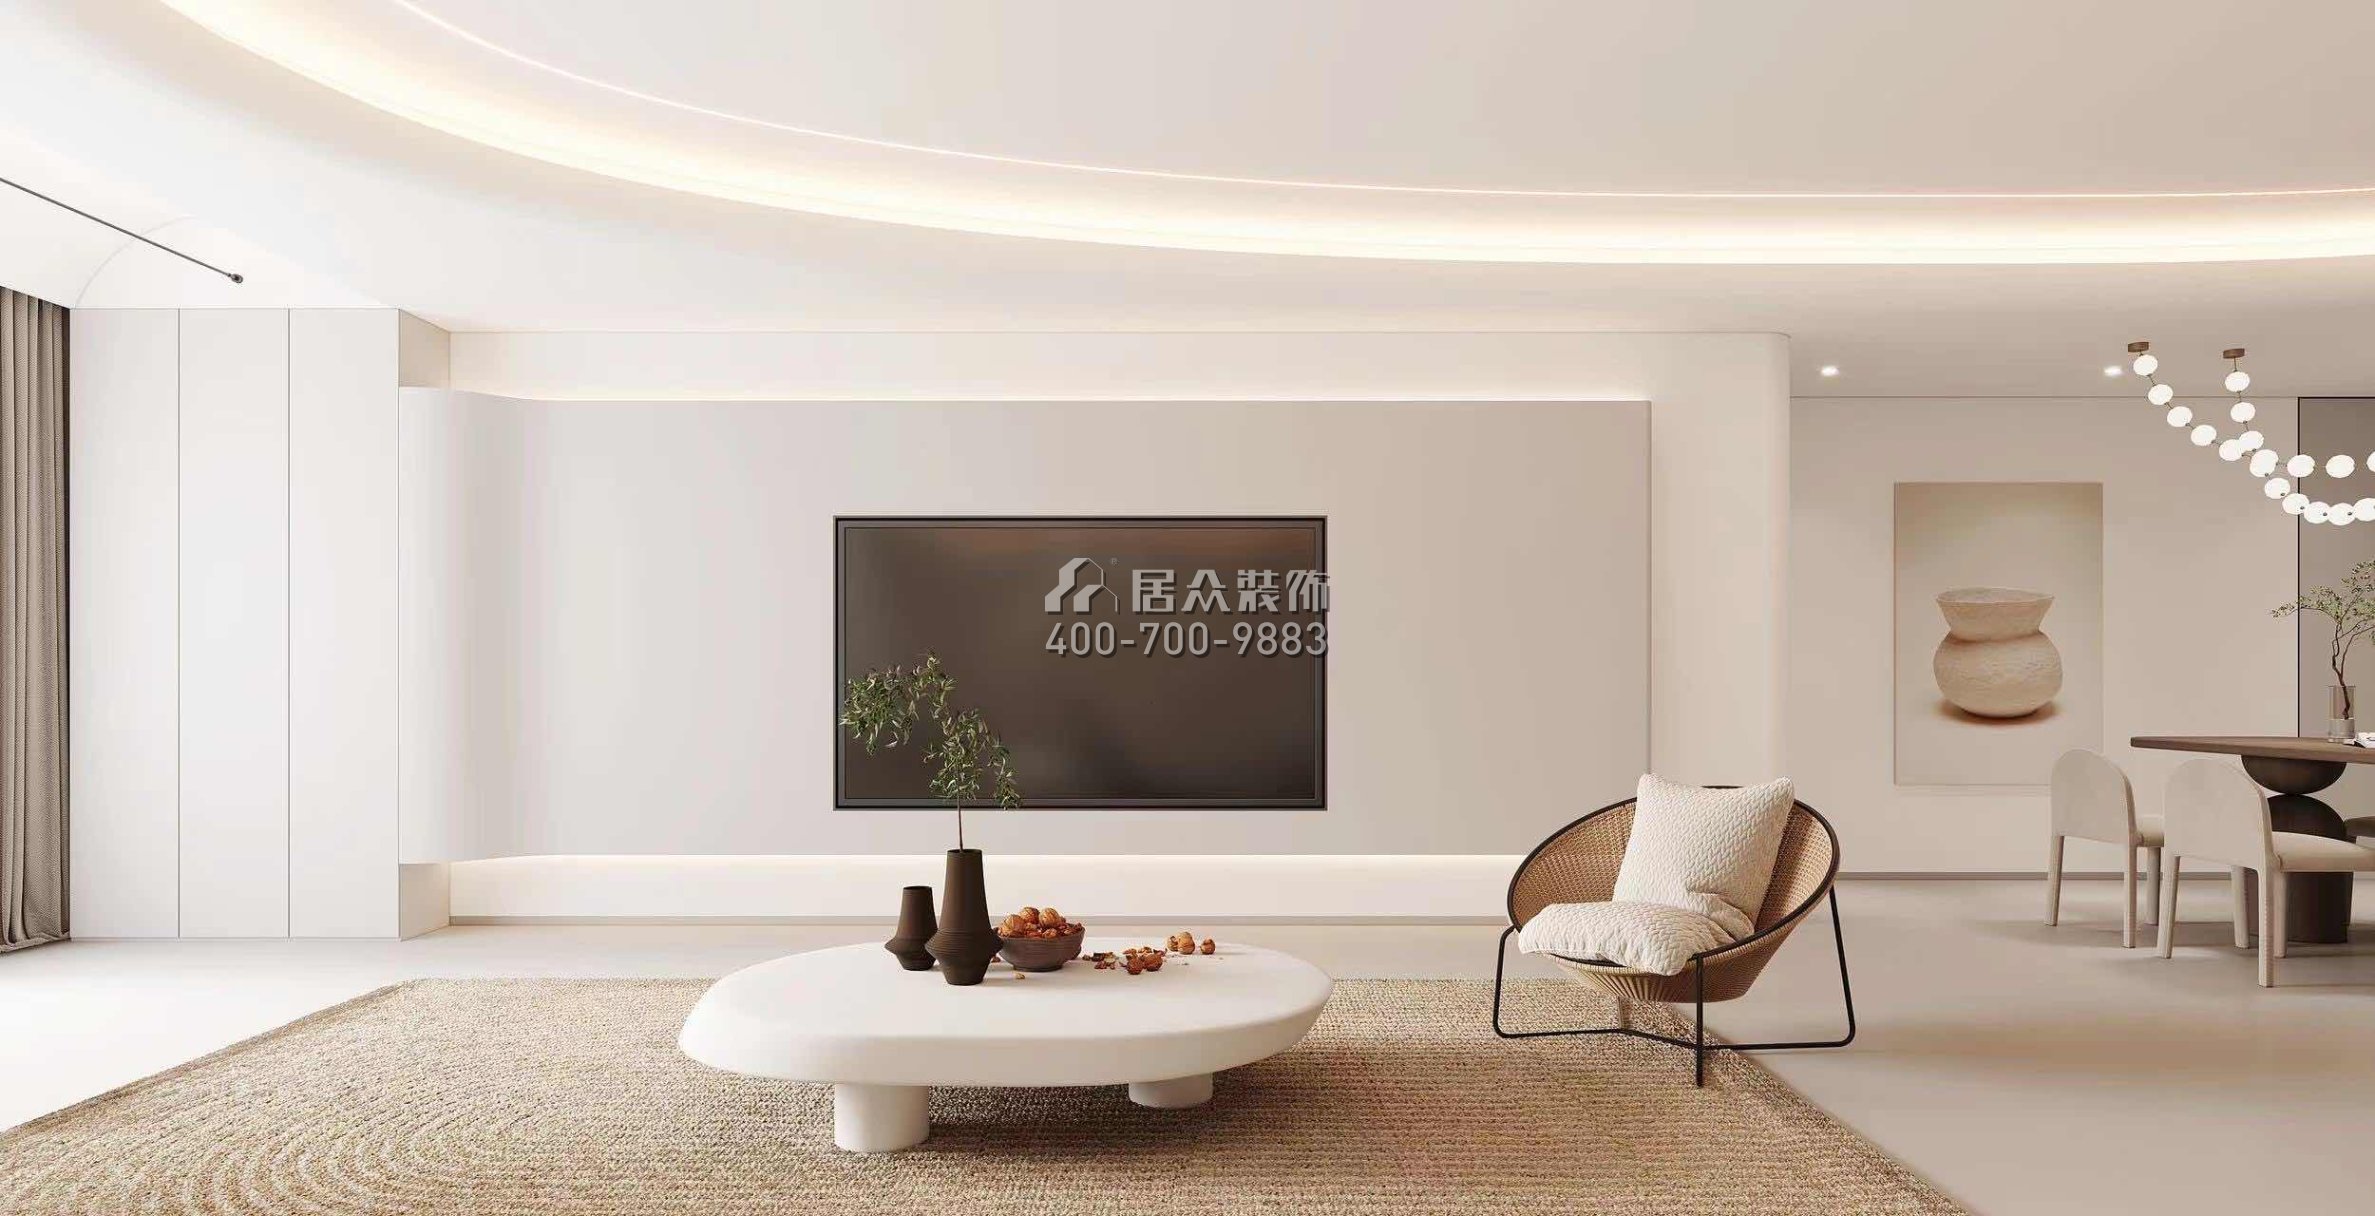 中洲滨海华府一期166平方米现代简约风格平层户型客厅装修效果图